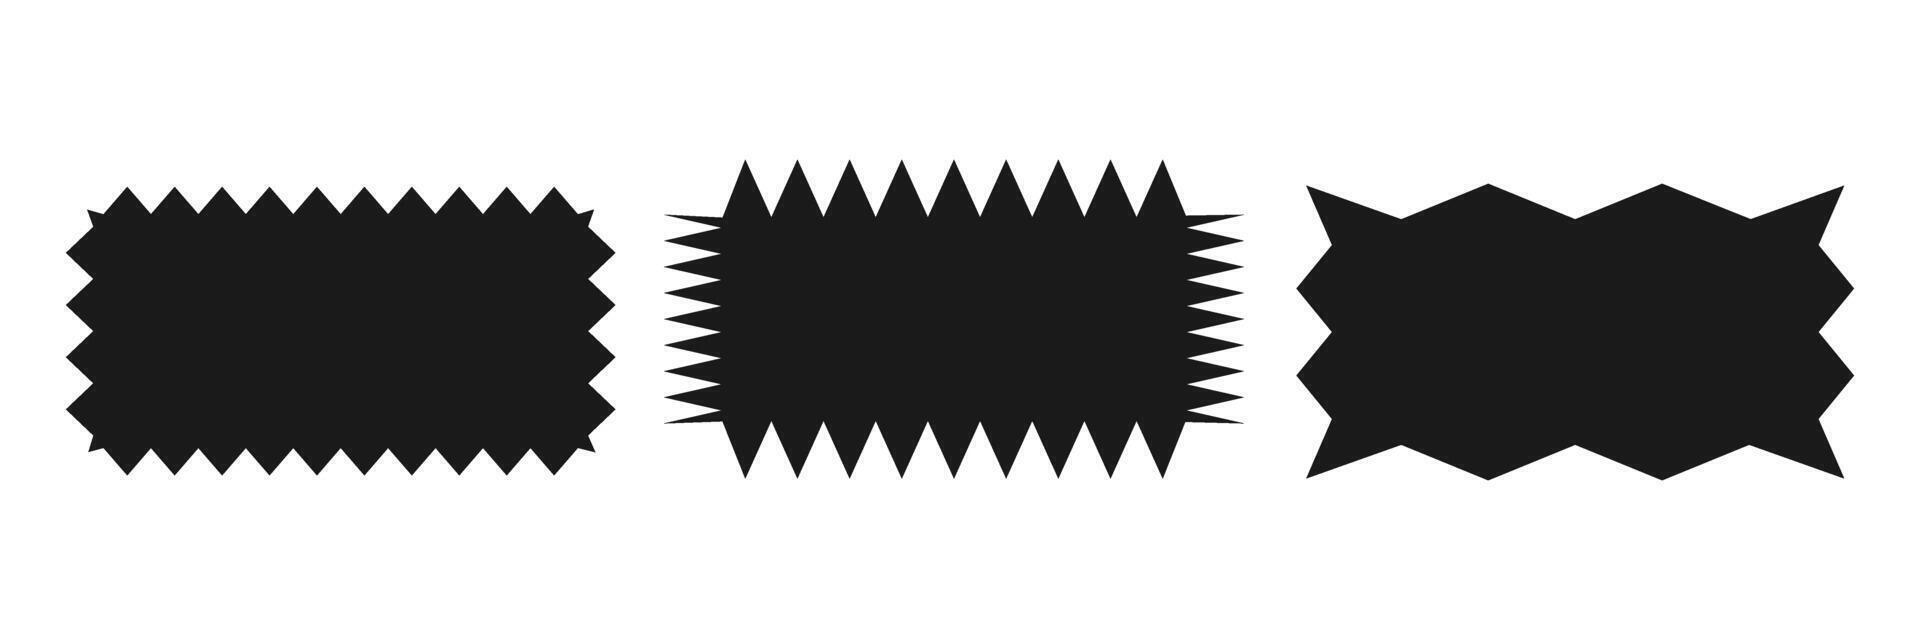 gekarteld rechthoek.a reeks van ongelijk zigzag rechthoekig vormen. zwart kleur. geïsoleerd elementen voor ontwerp van tekst doos, knop, insigne, banier, label, sticker, kenteken. vector illustratie.